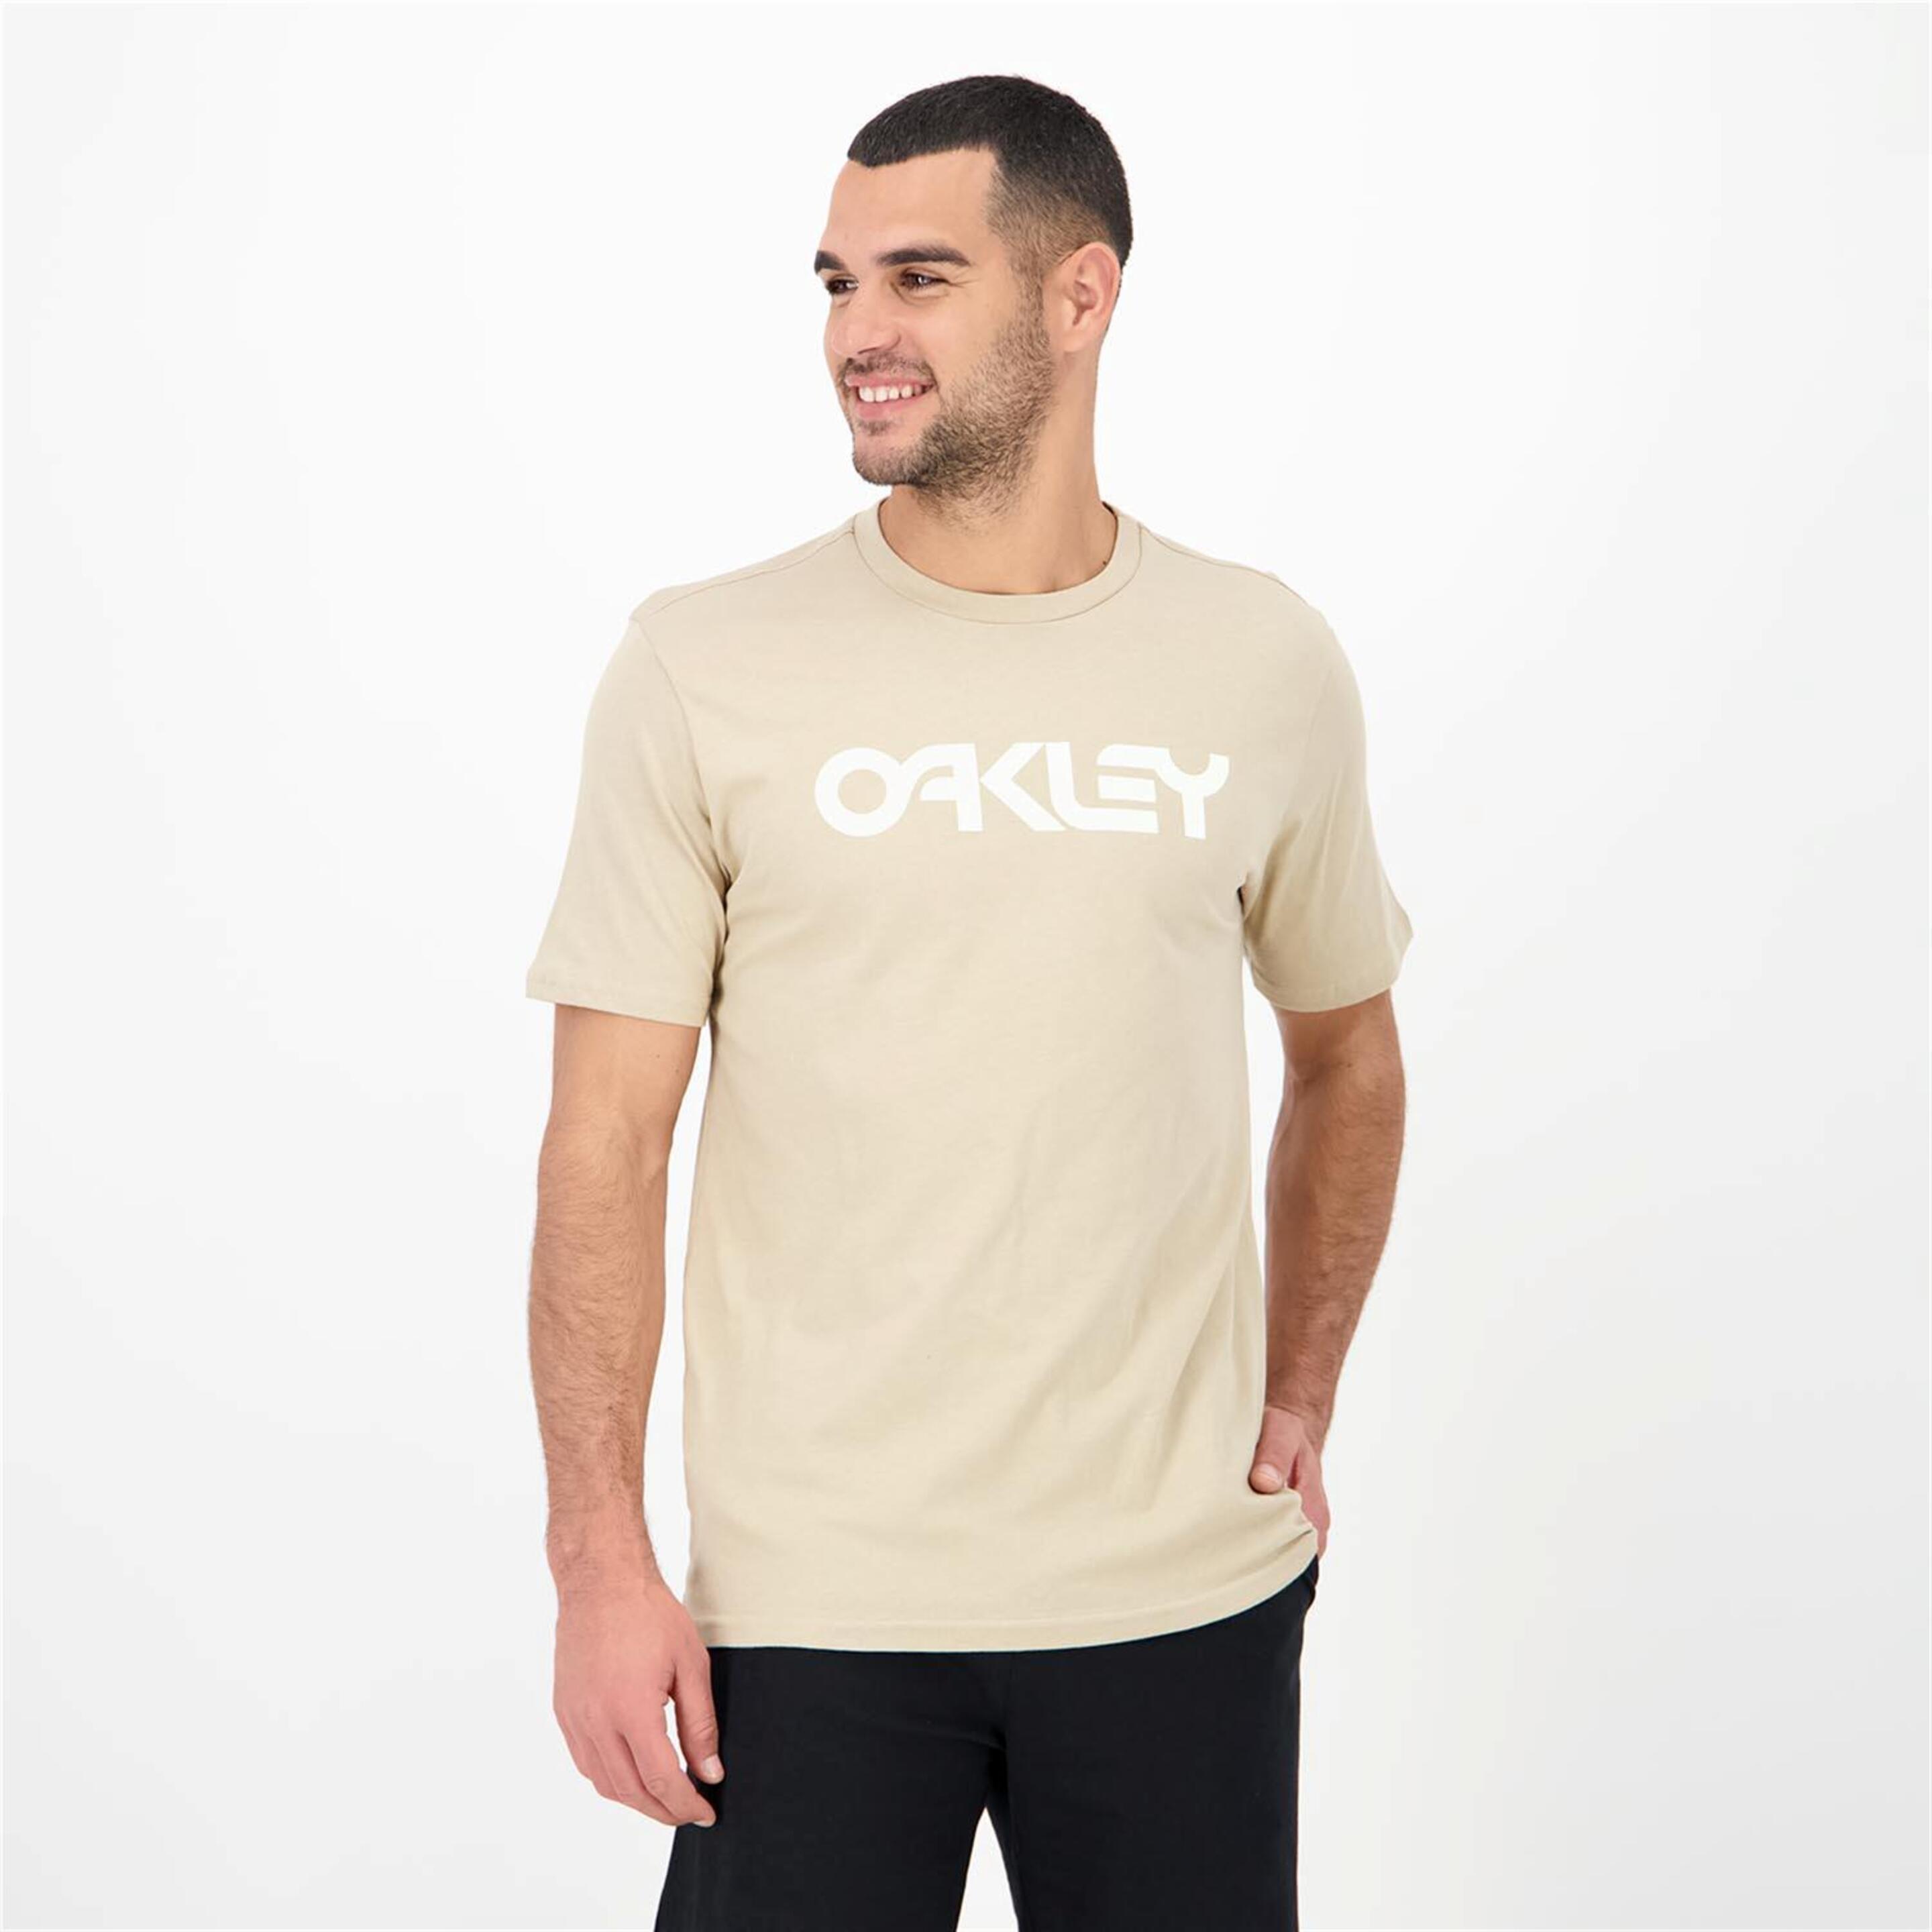 Oakley Mark Ii 2.0 - marron - Camiseta Montaña Hombre